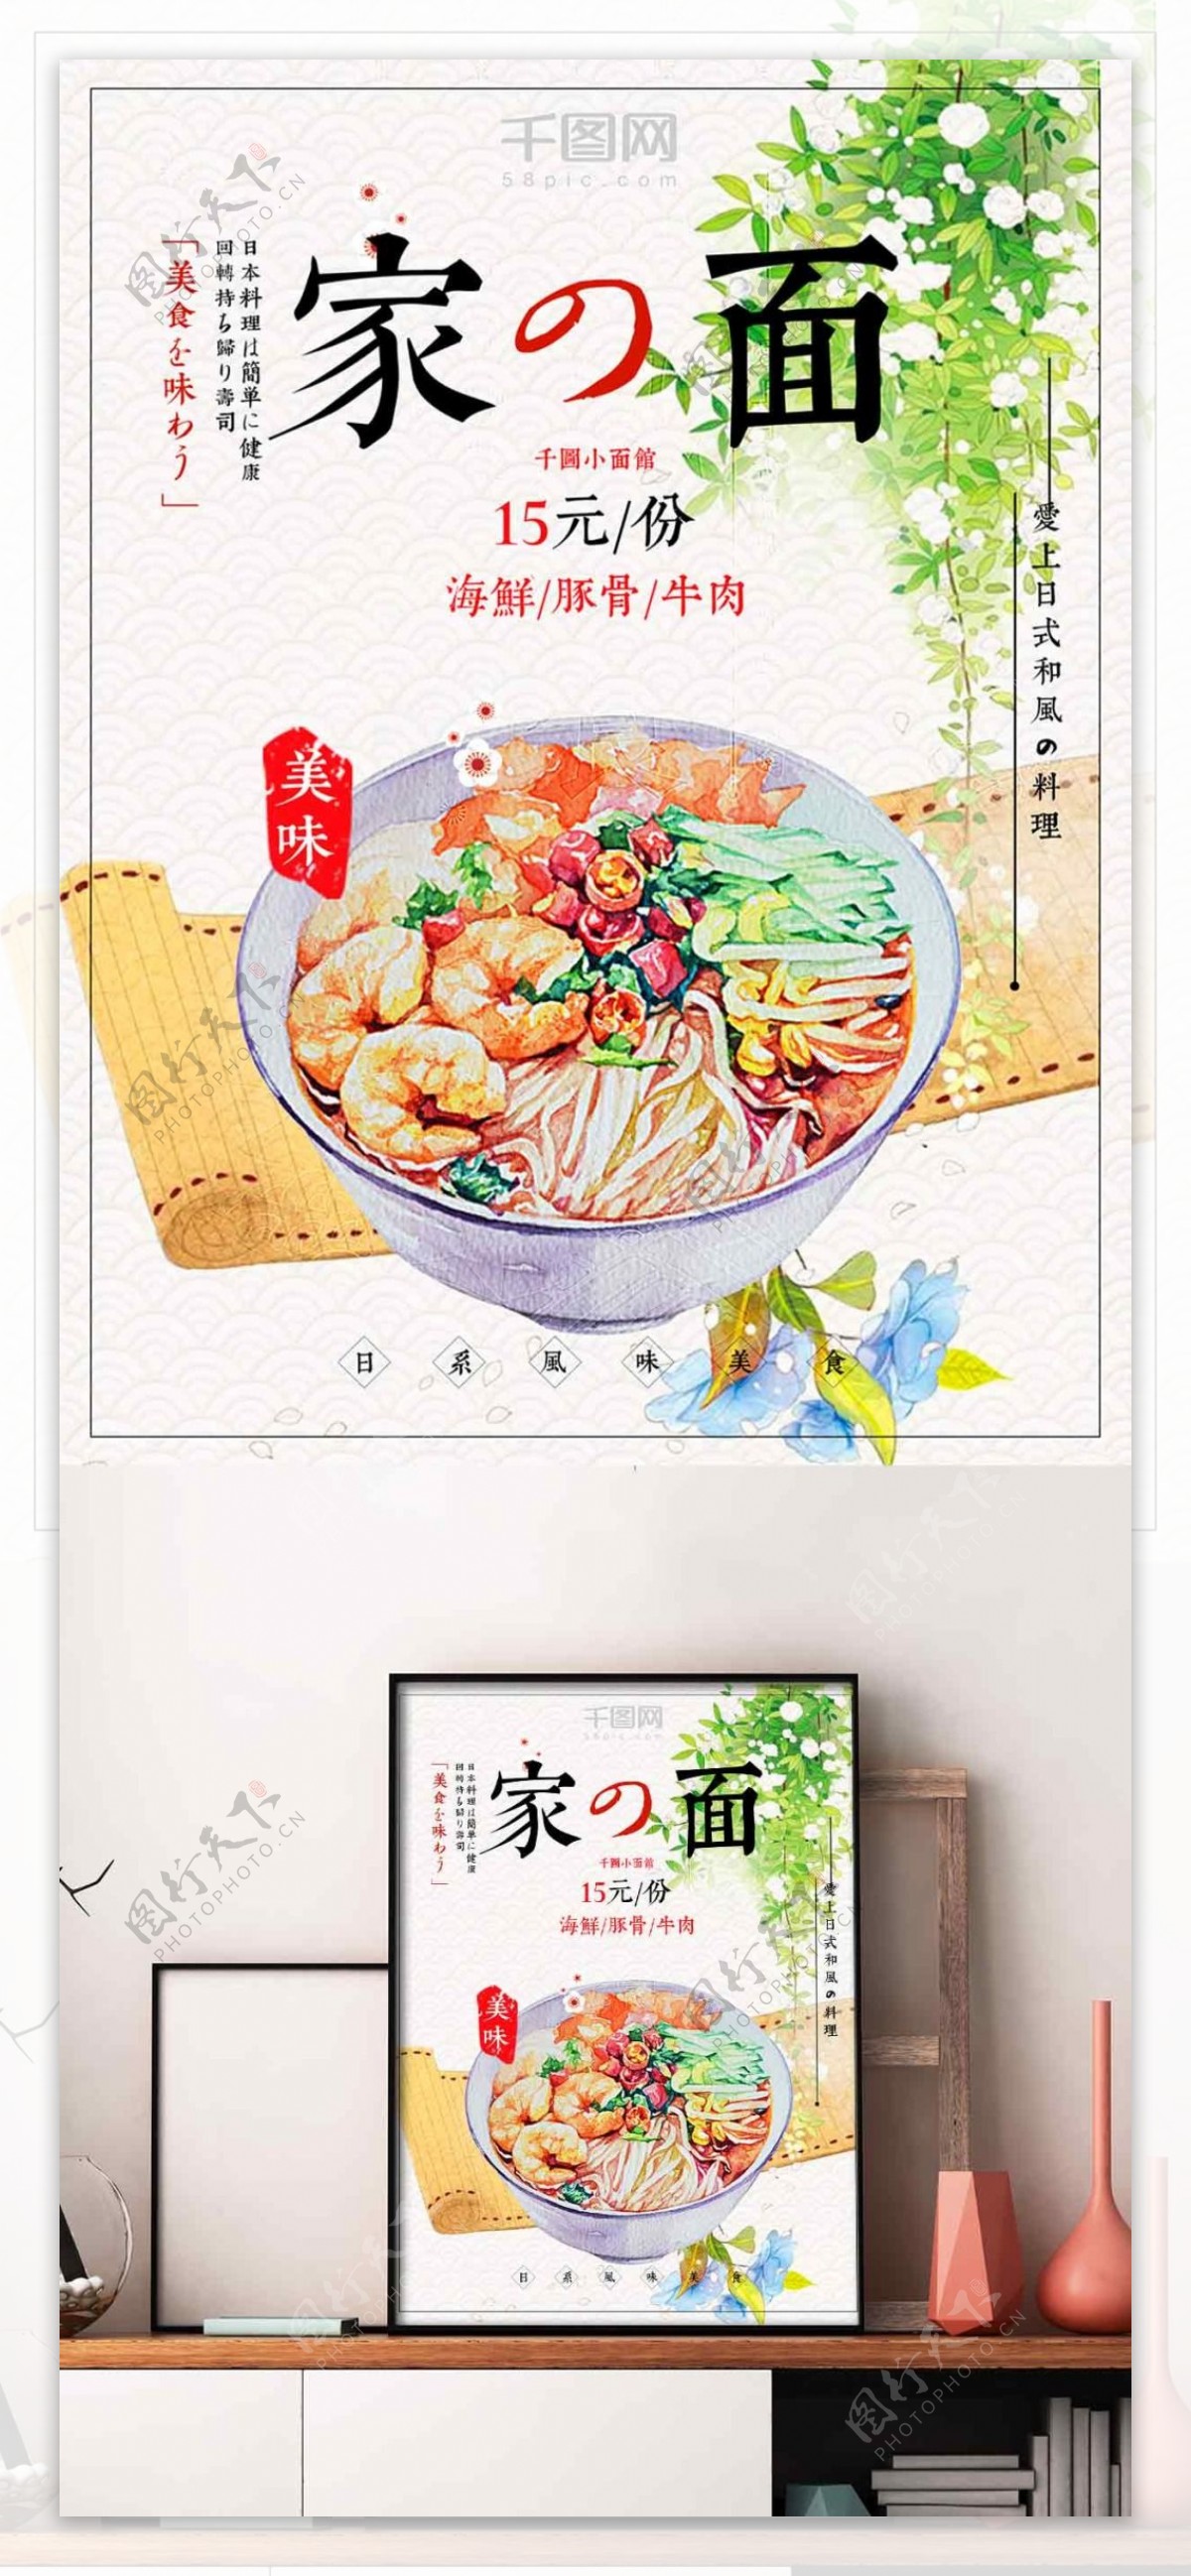 日本料理家的面餐厅美食菜单促销海报设计